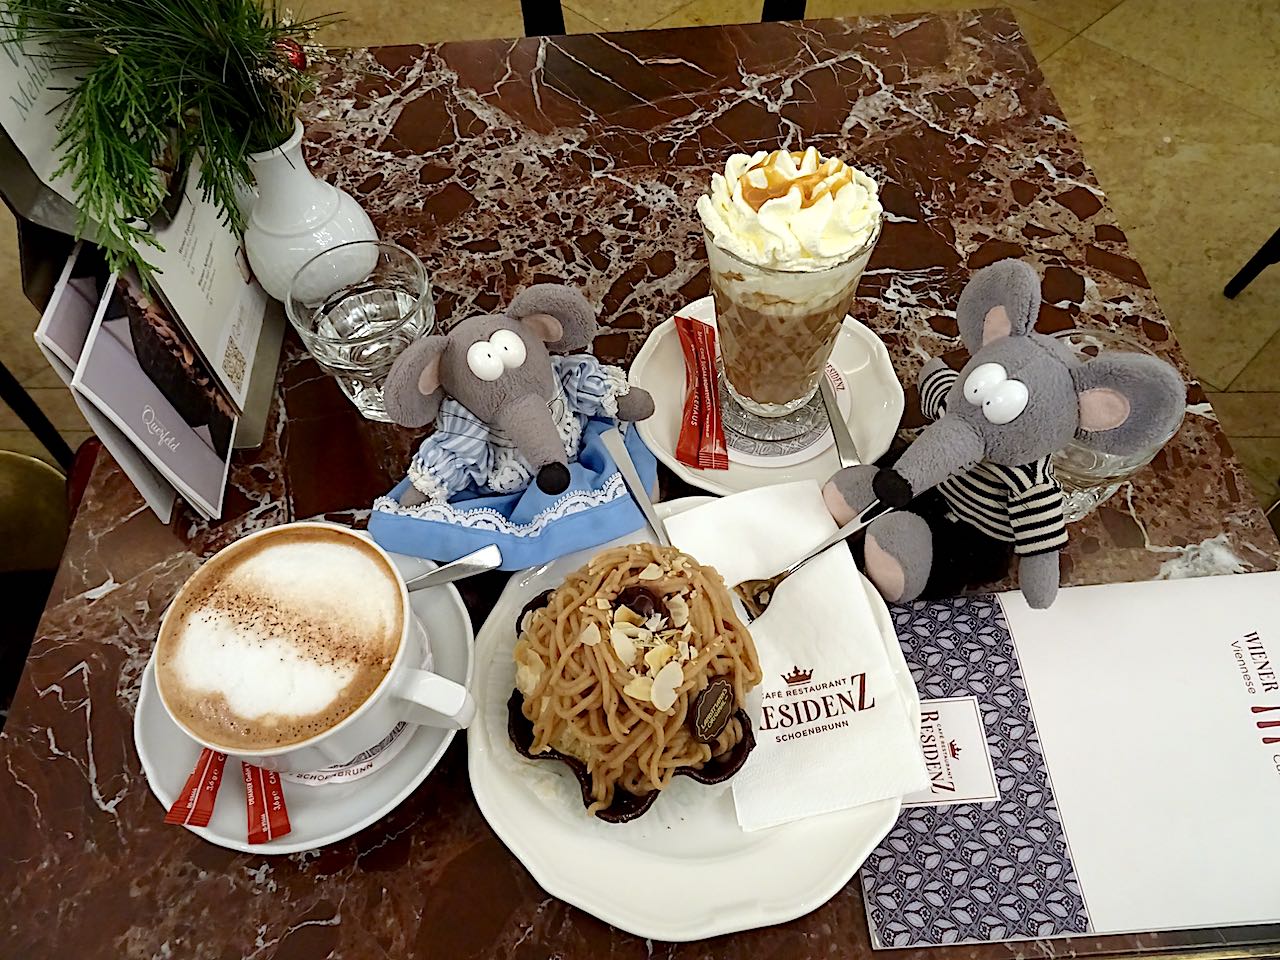 Café Residenz Vienne